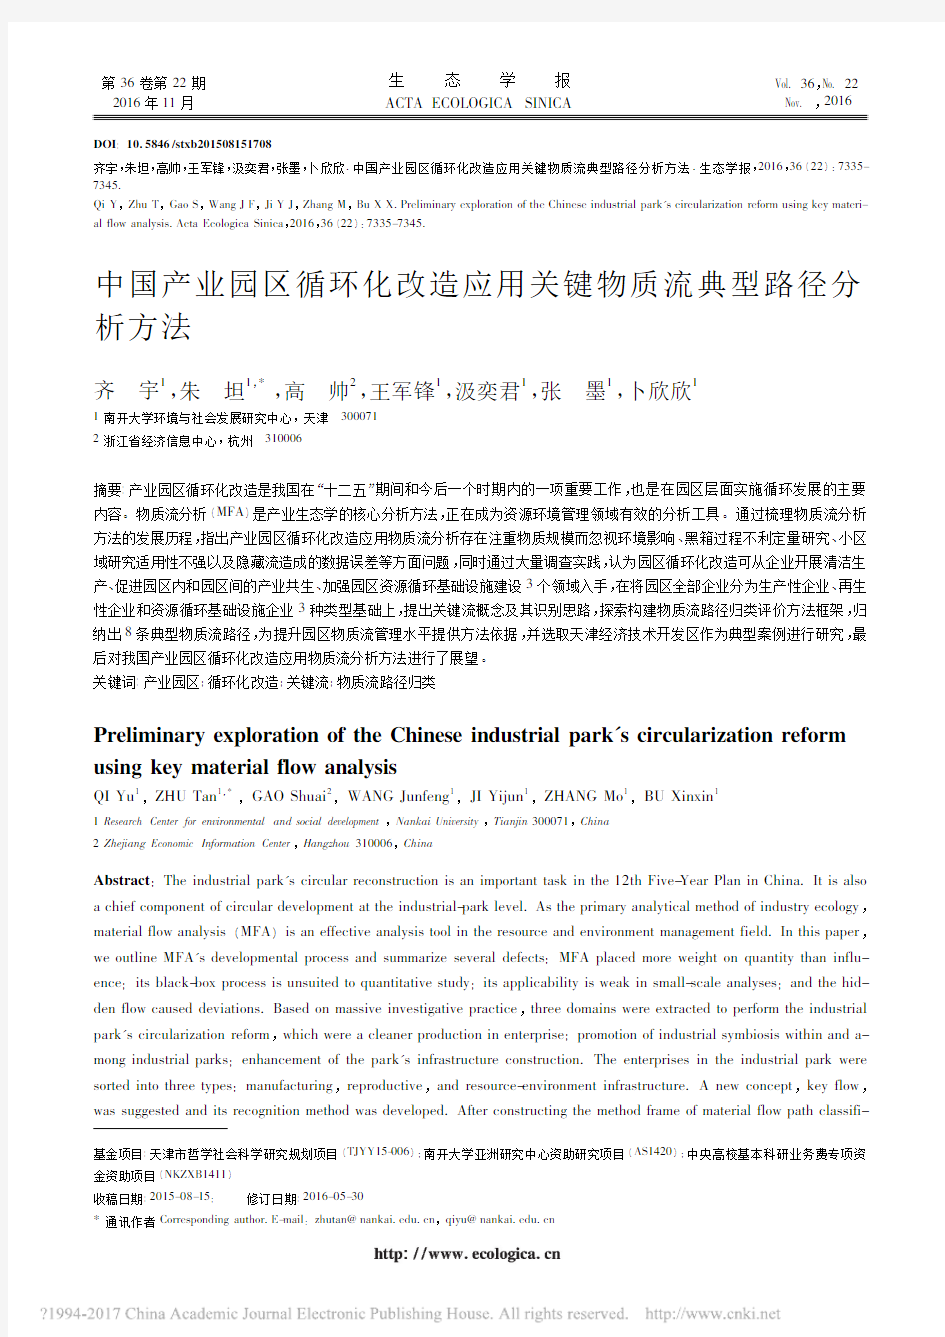 中国产业园区循环化改造应用关键物质流典型路径分析方法_齐宇